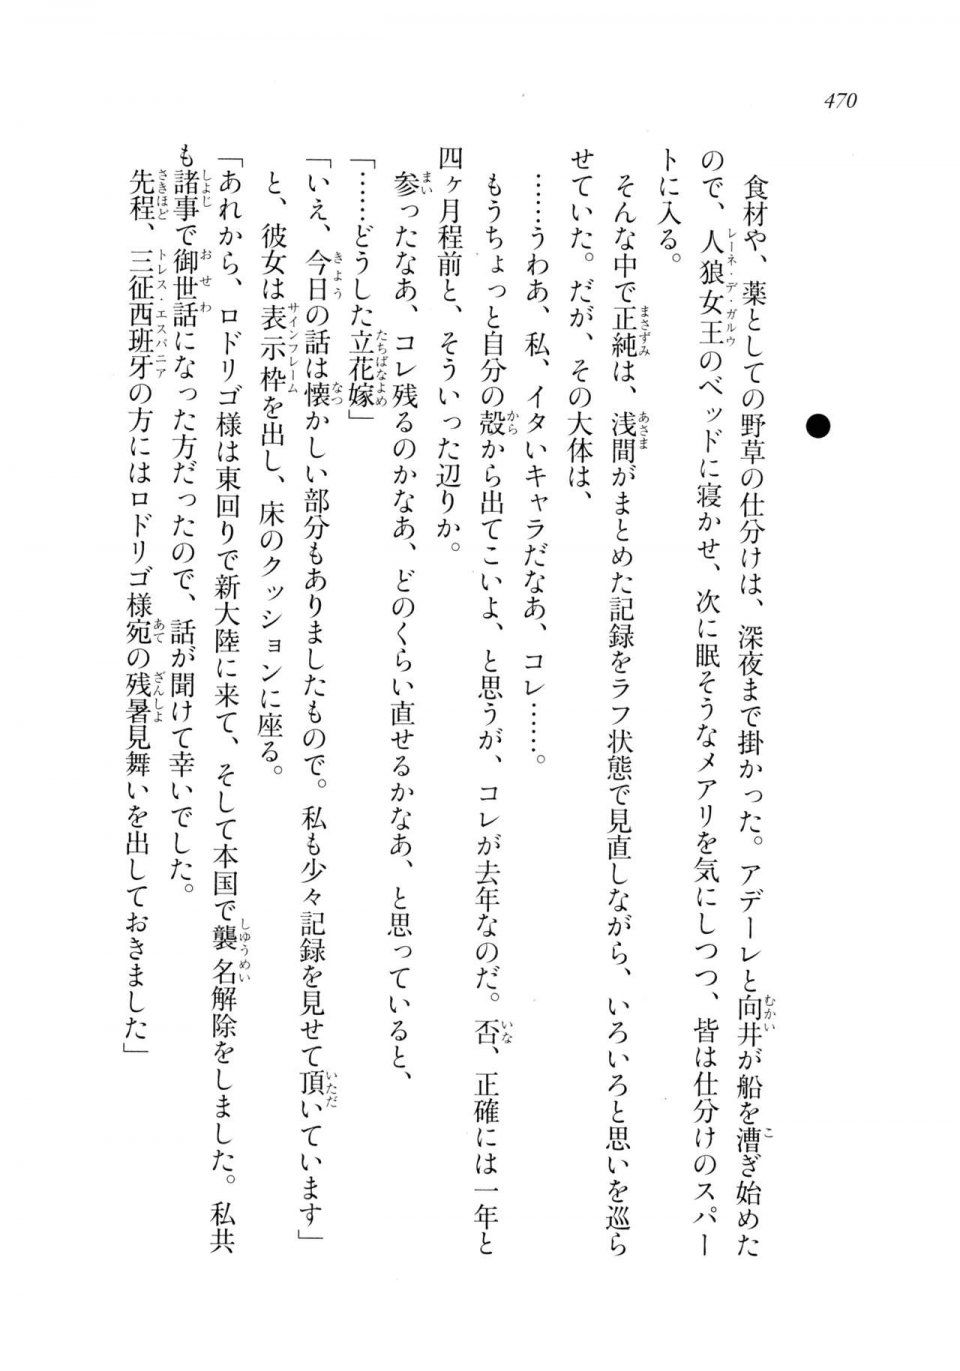 Kyoukai Senjou no Horizon LN Sidestory Vol 2 - Photo #468